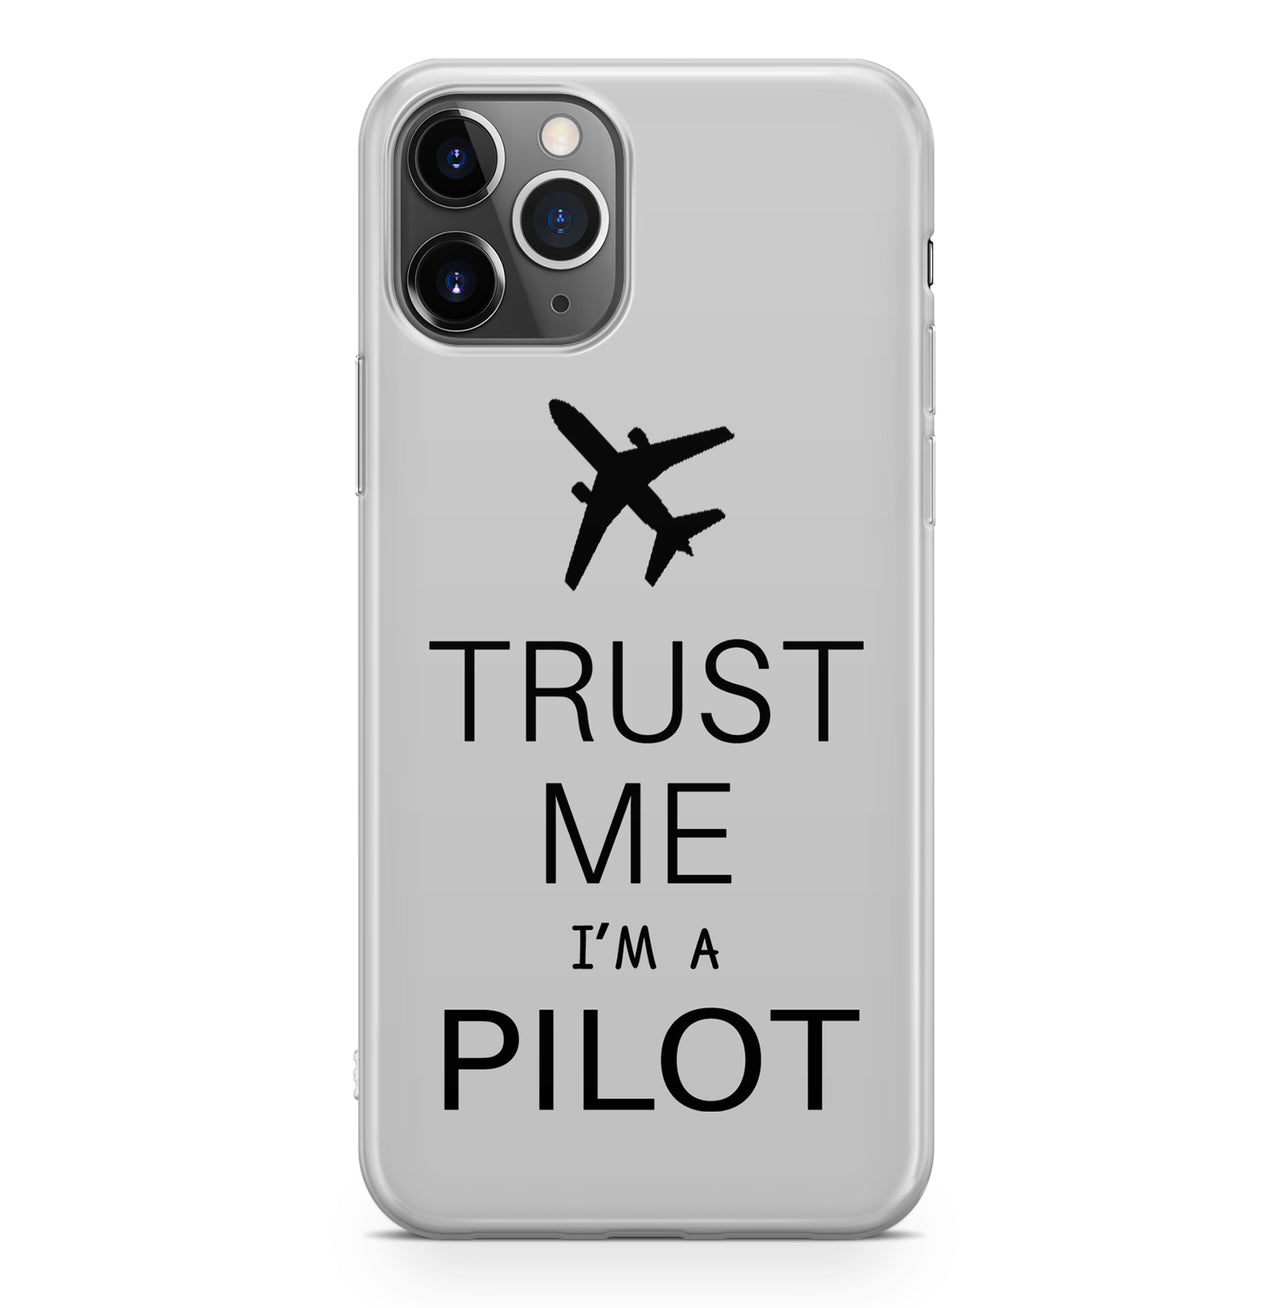 Trust Me I'm a Pilot 2 Designed iPhone Cases